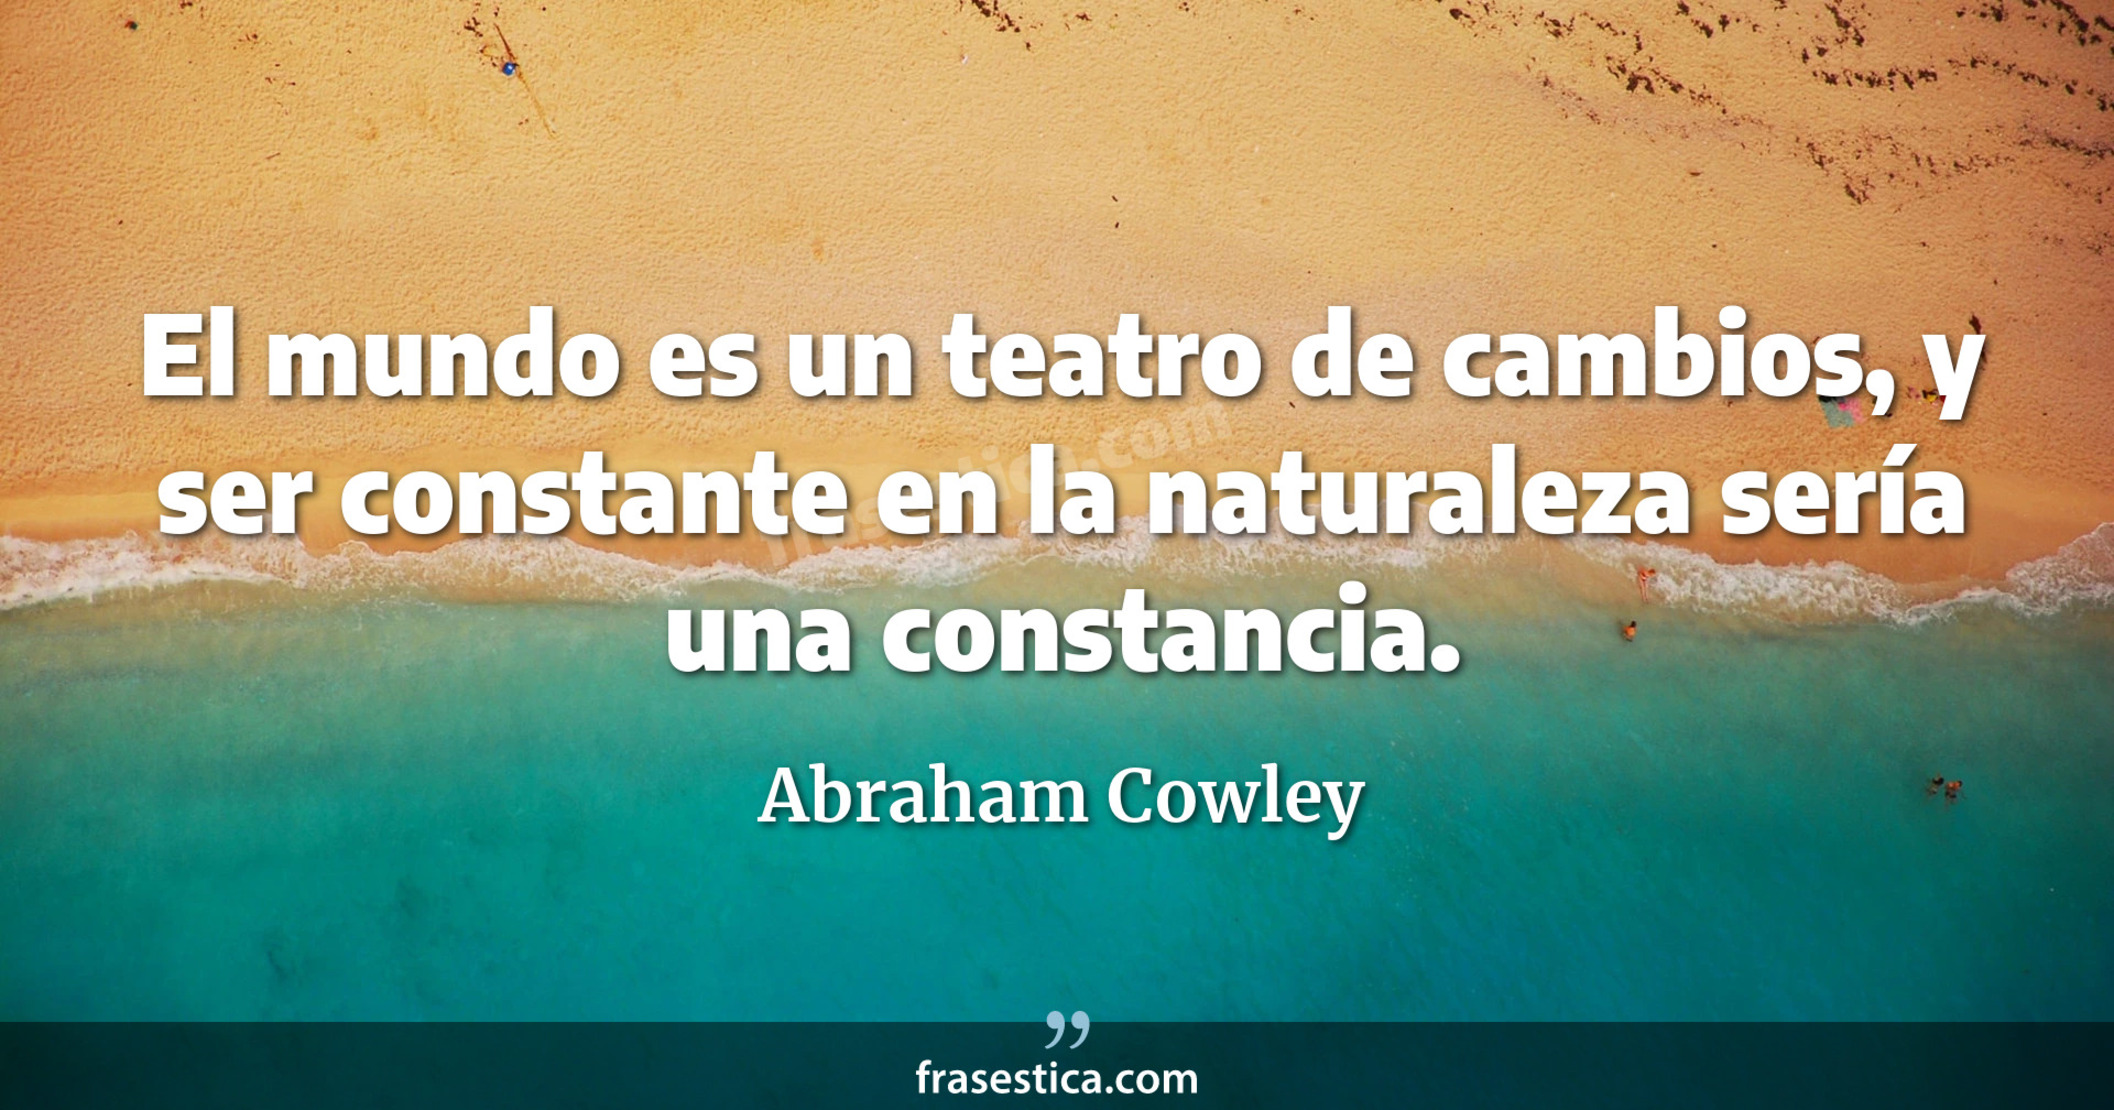 El mundo es un teatro de cambios, y ser constante en la naturaleza sería una constancia. - Abraham Cowley